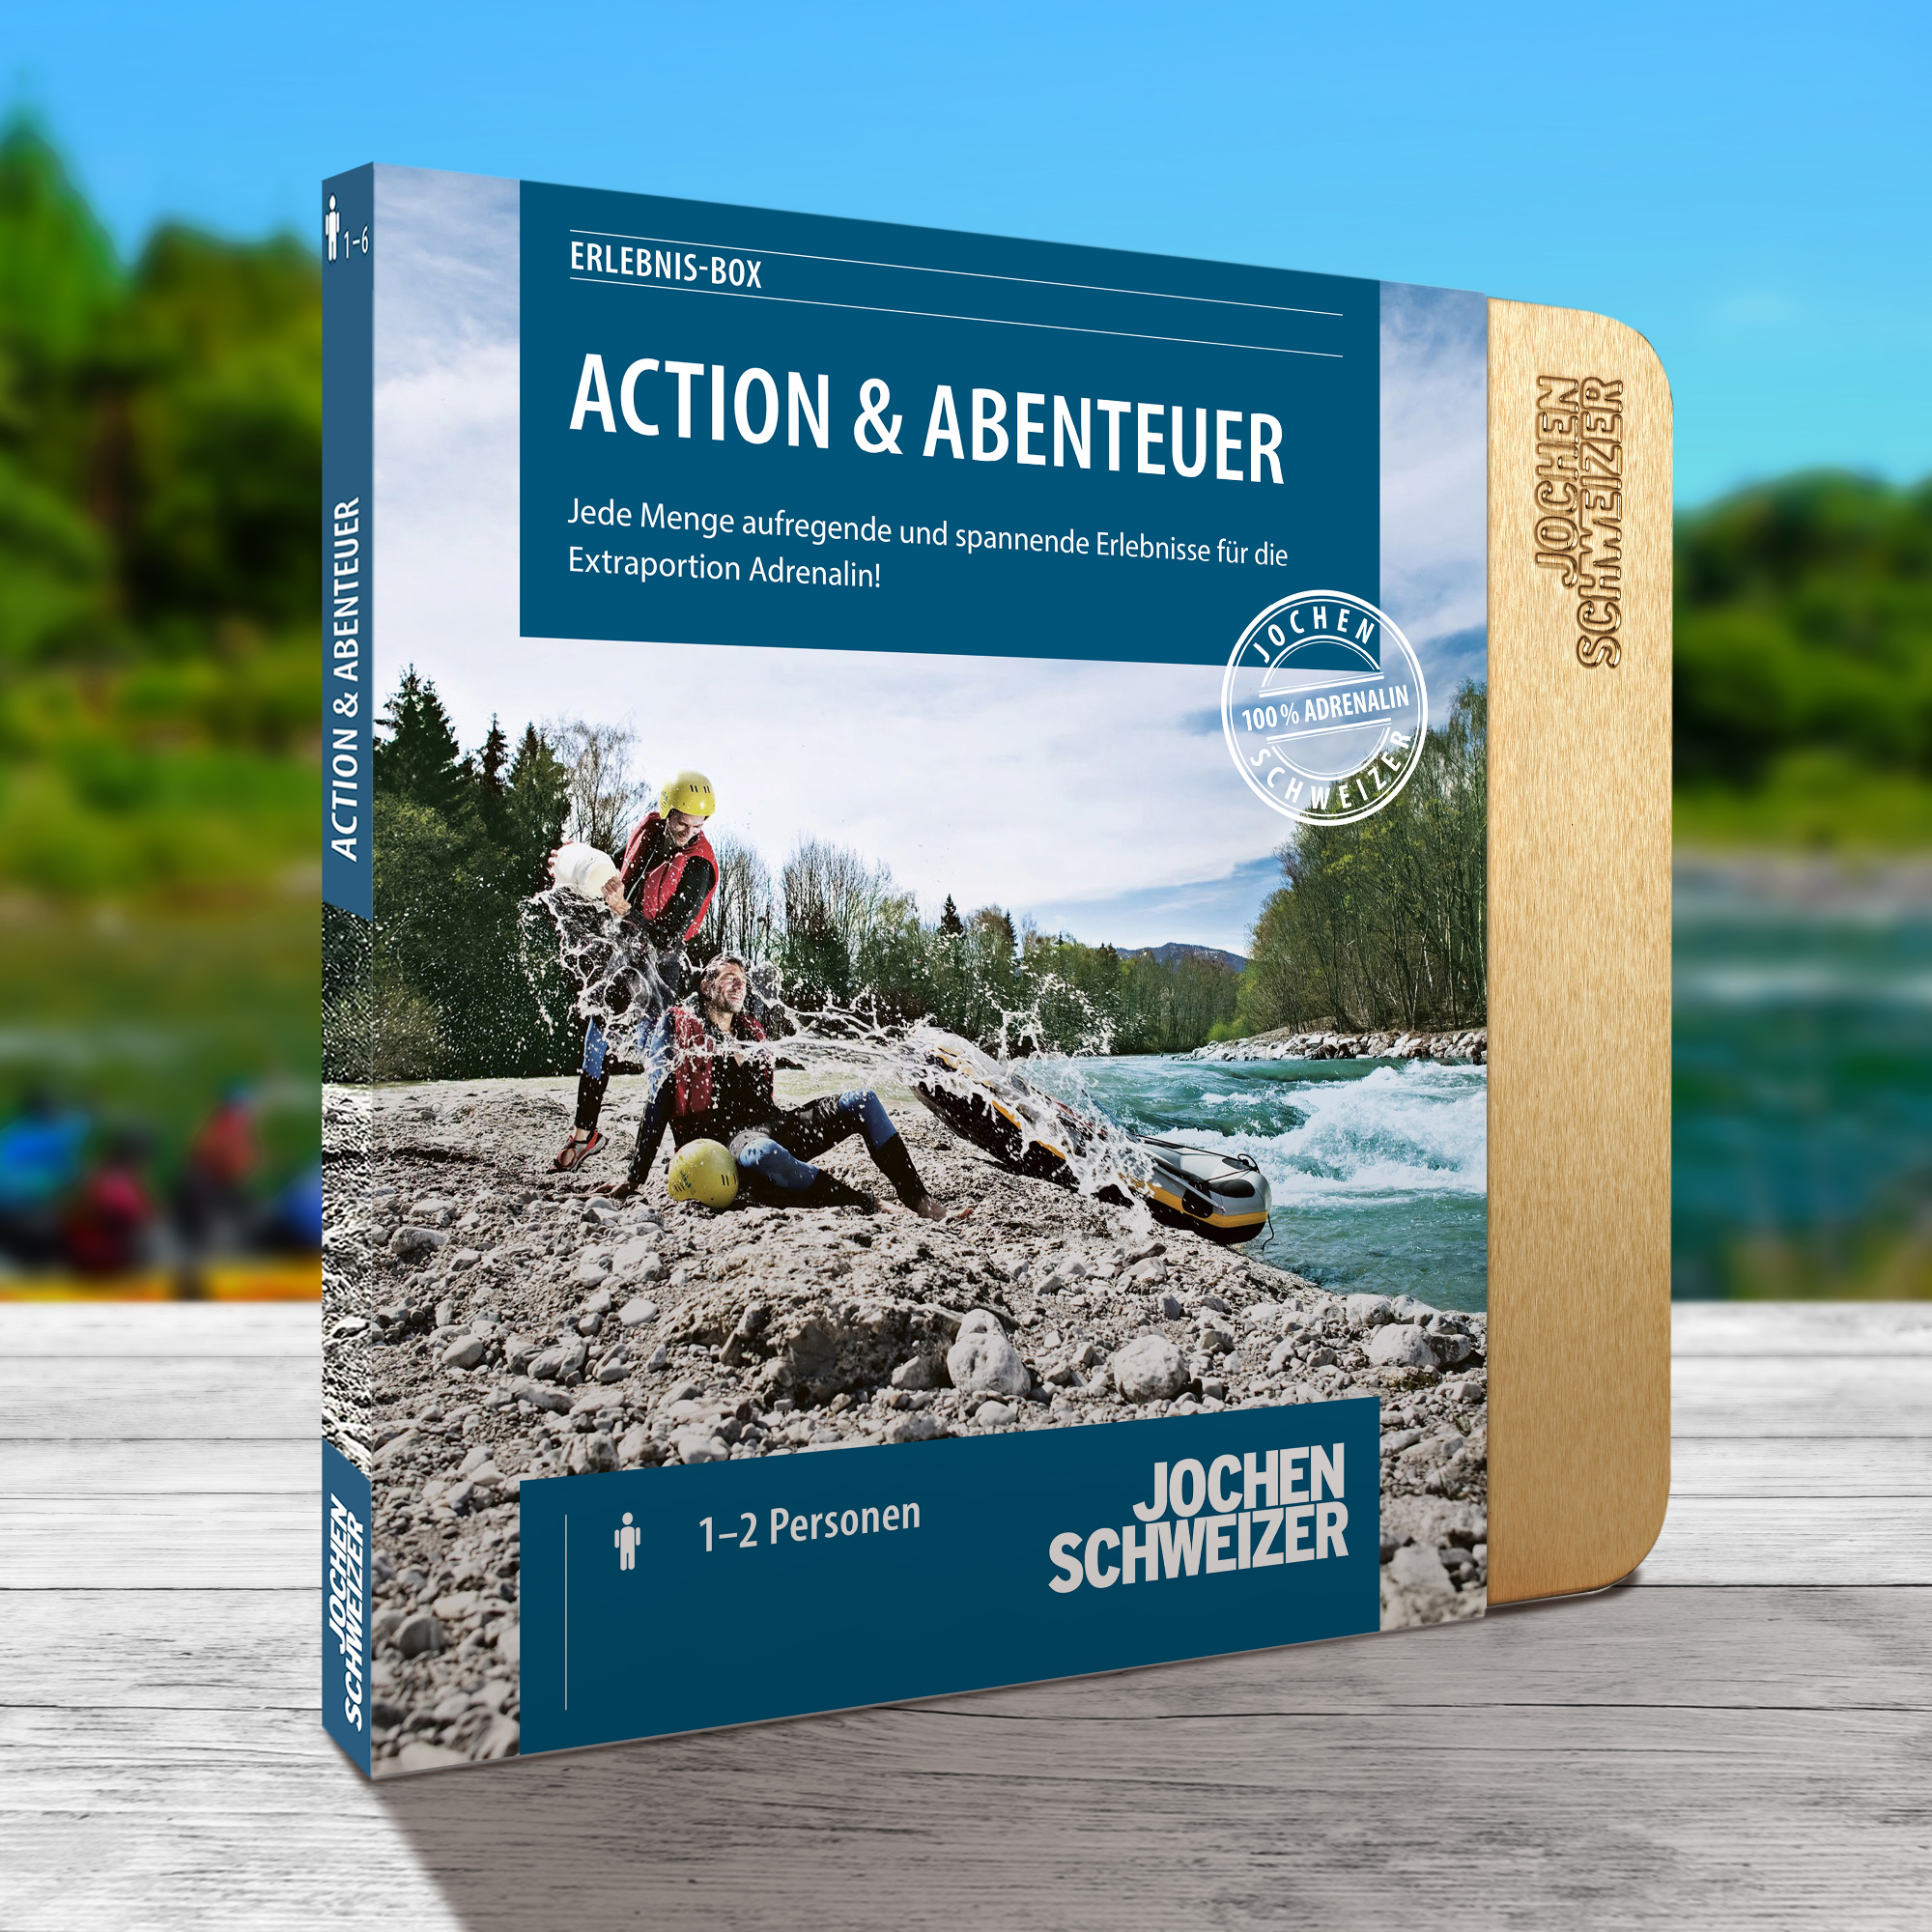 Action & Abenteuer - Erlebnisgeschenk 4192